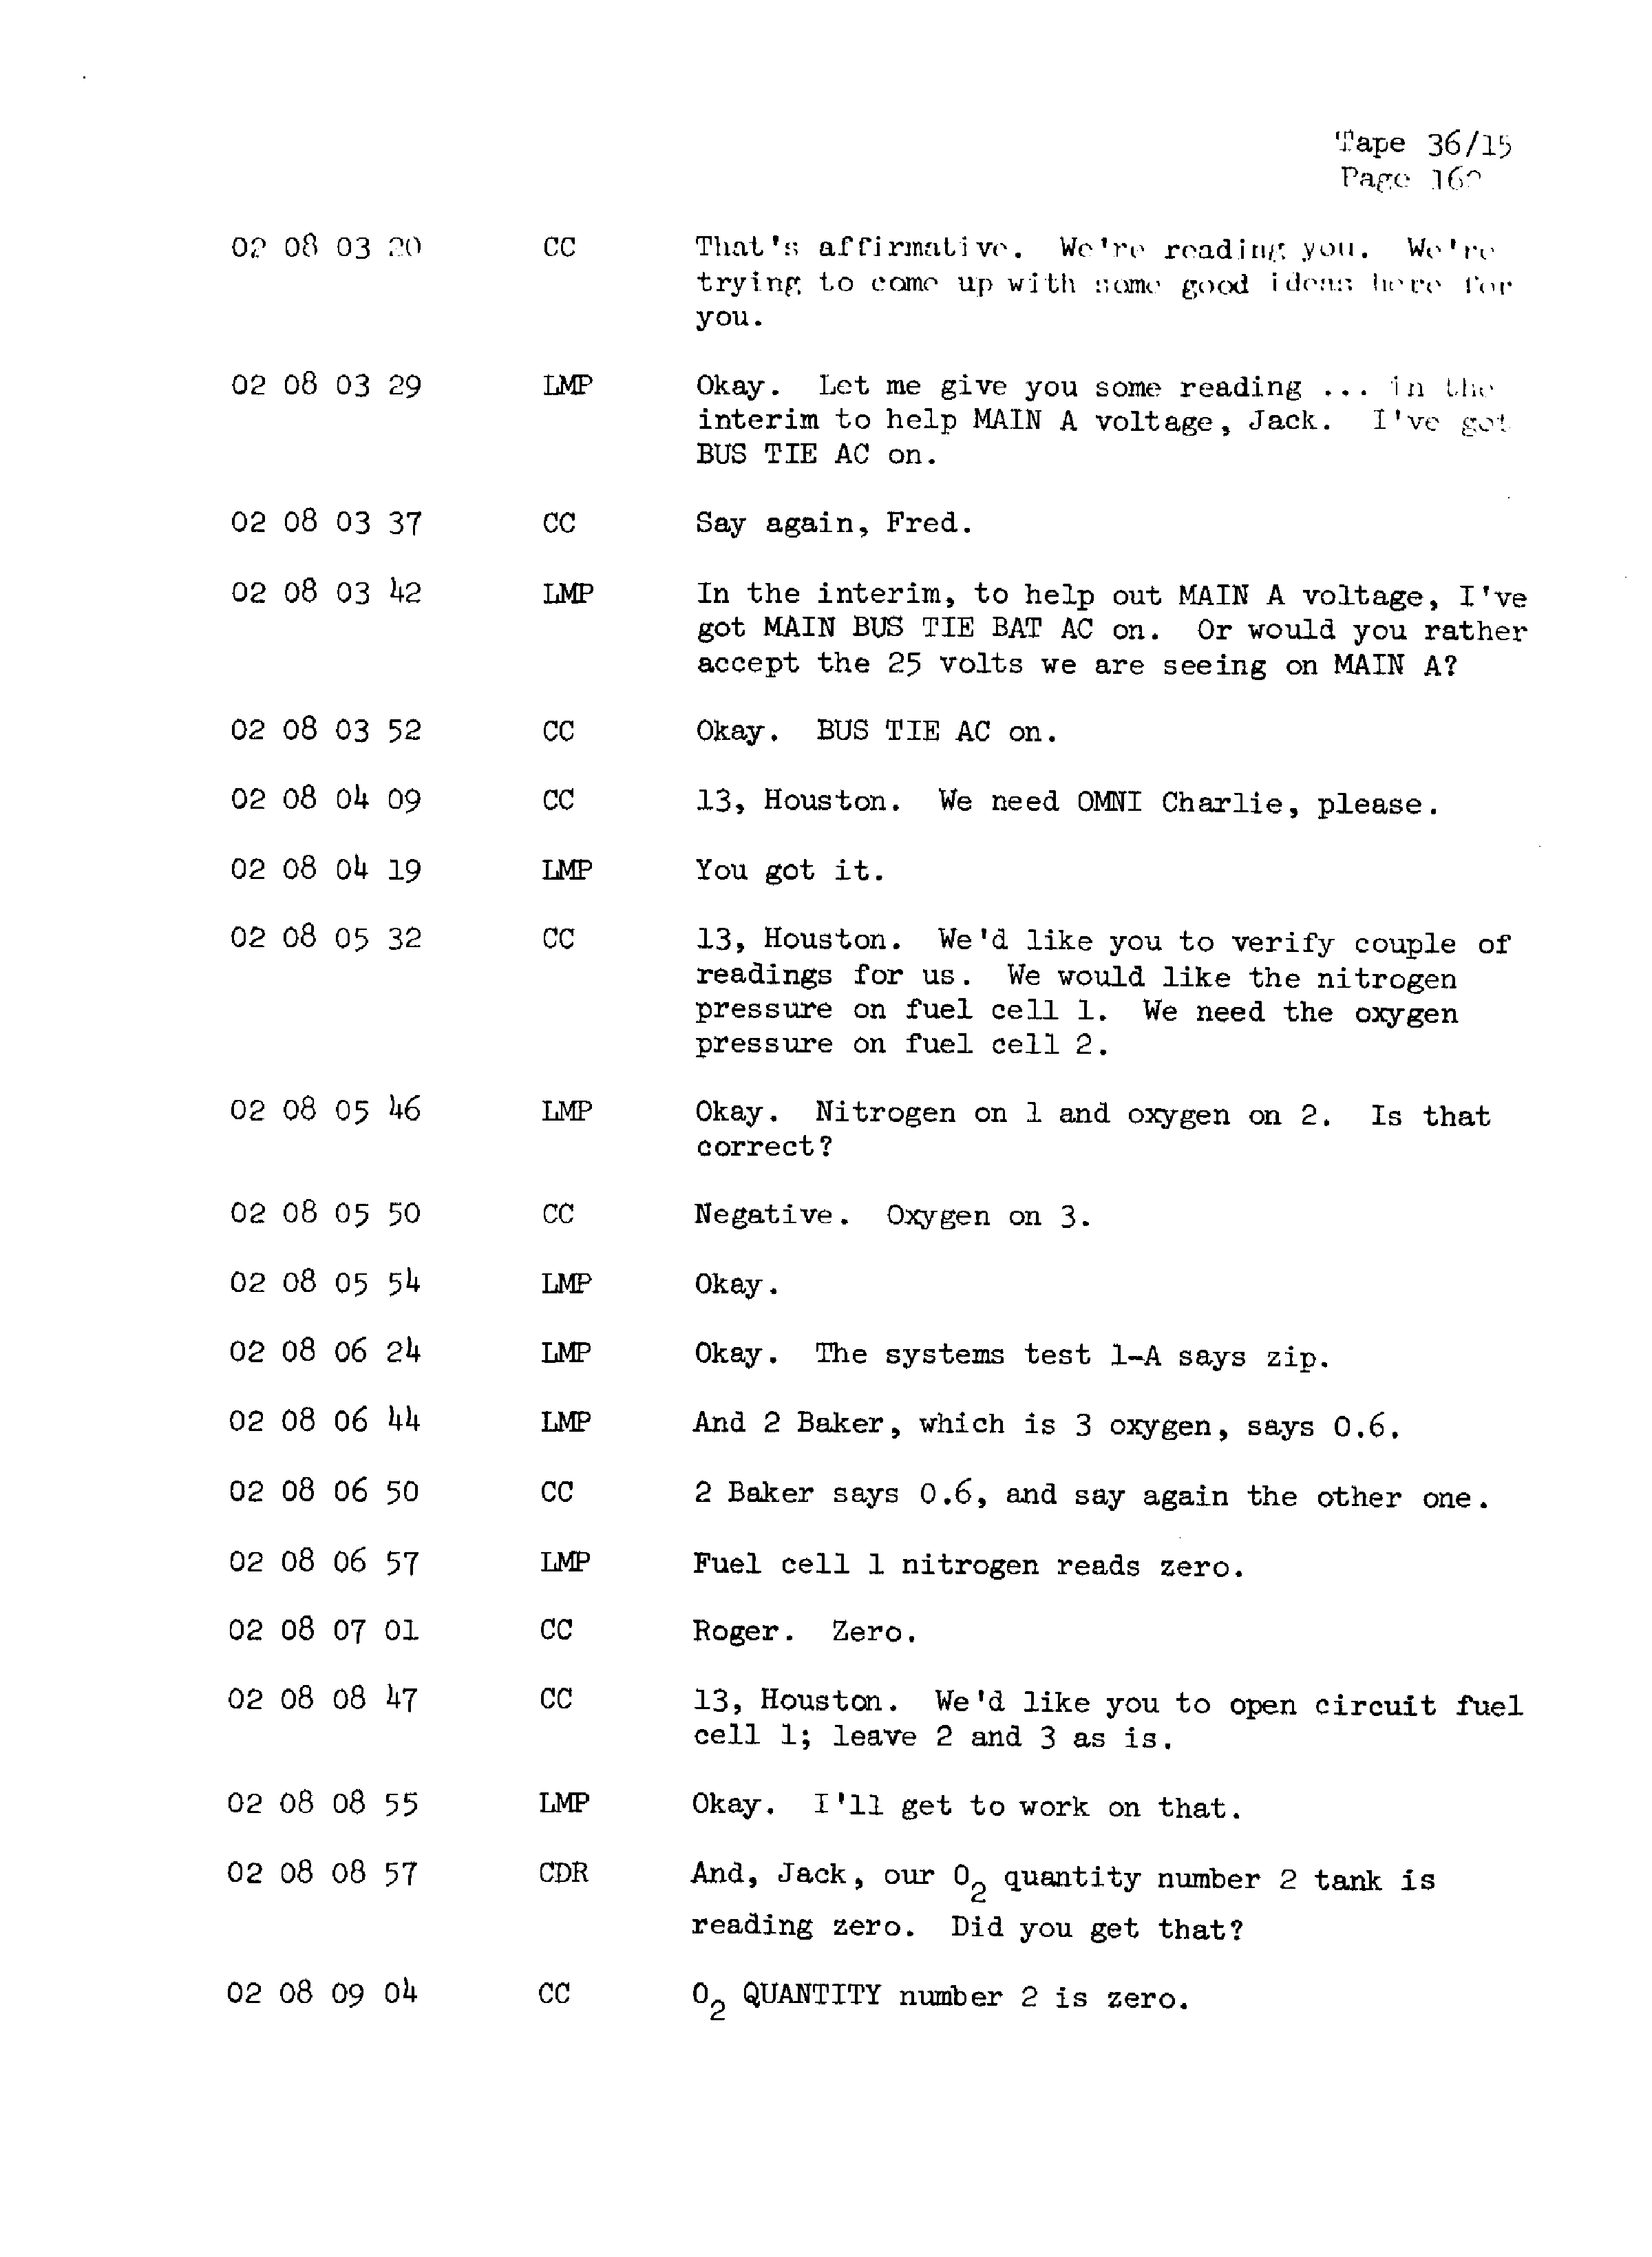 Page 169 of Apollo 13’s original transcript